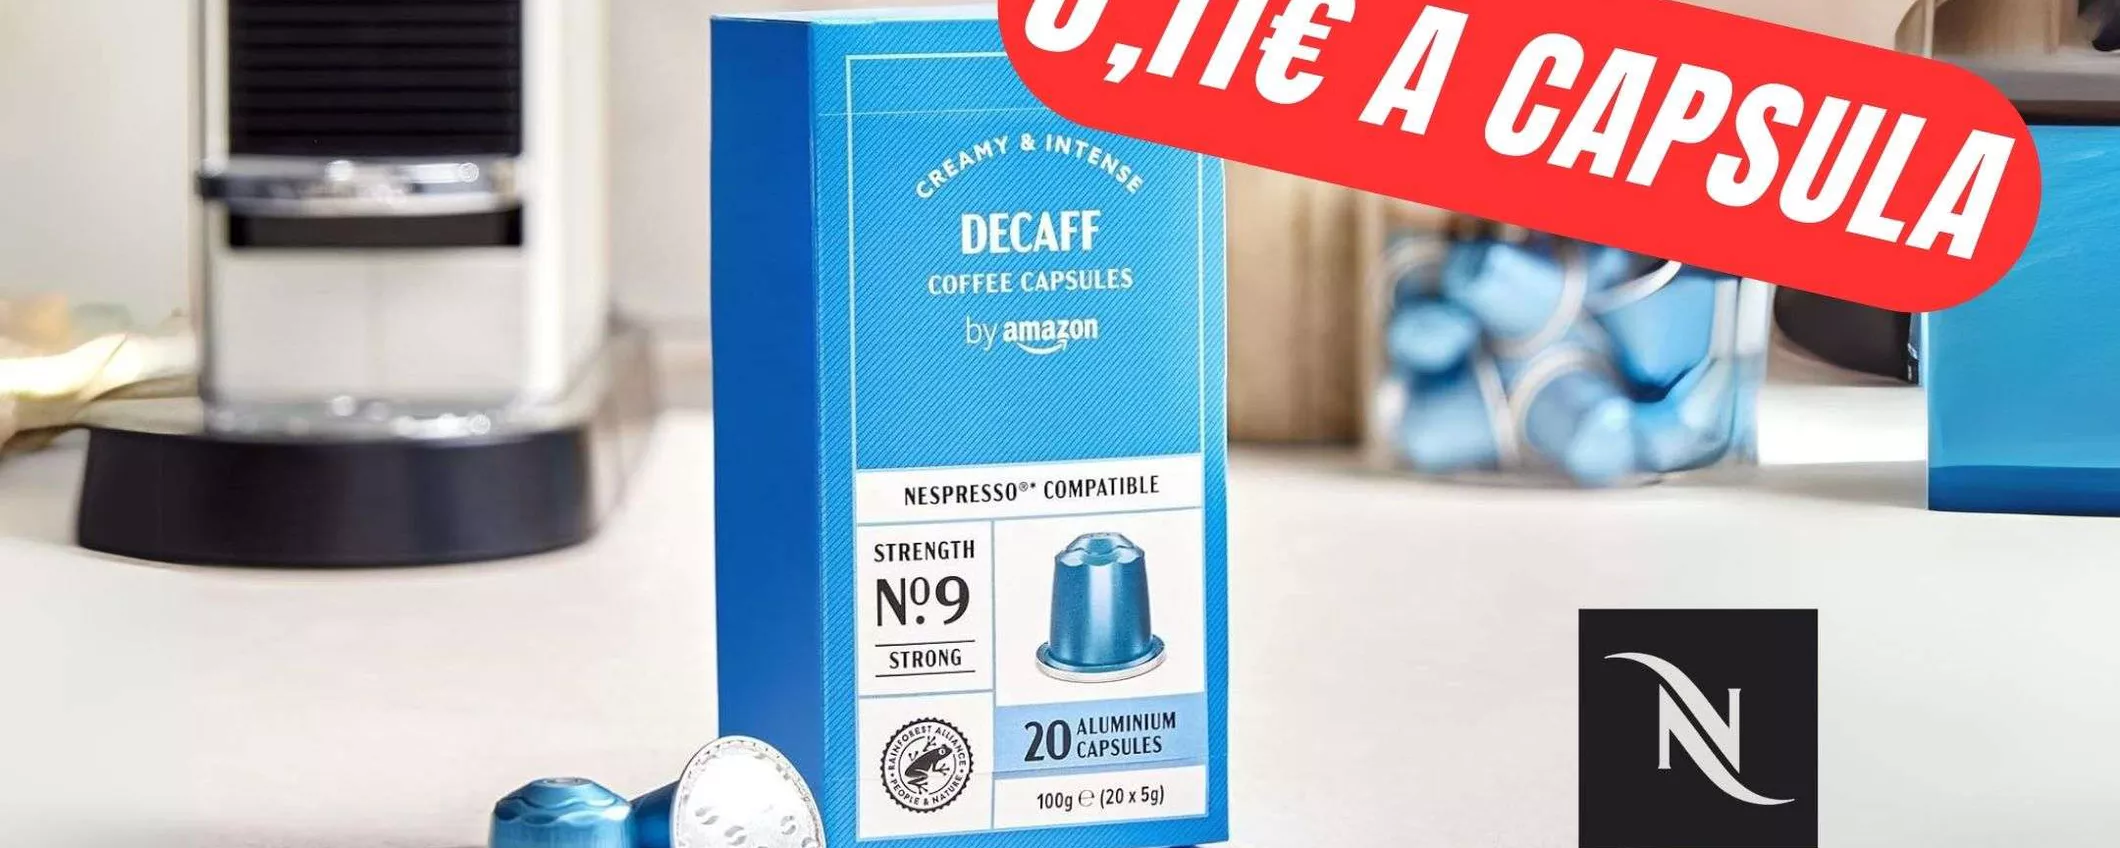 0,11€ centesimi per Capsula Nespresso?! È l'OFFERTA FOLLE di Amazon